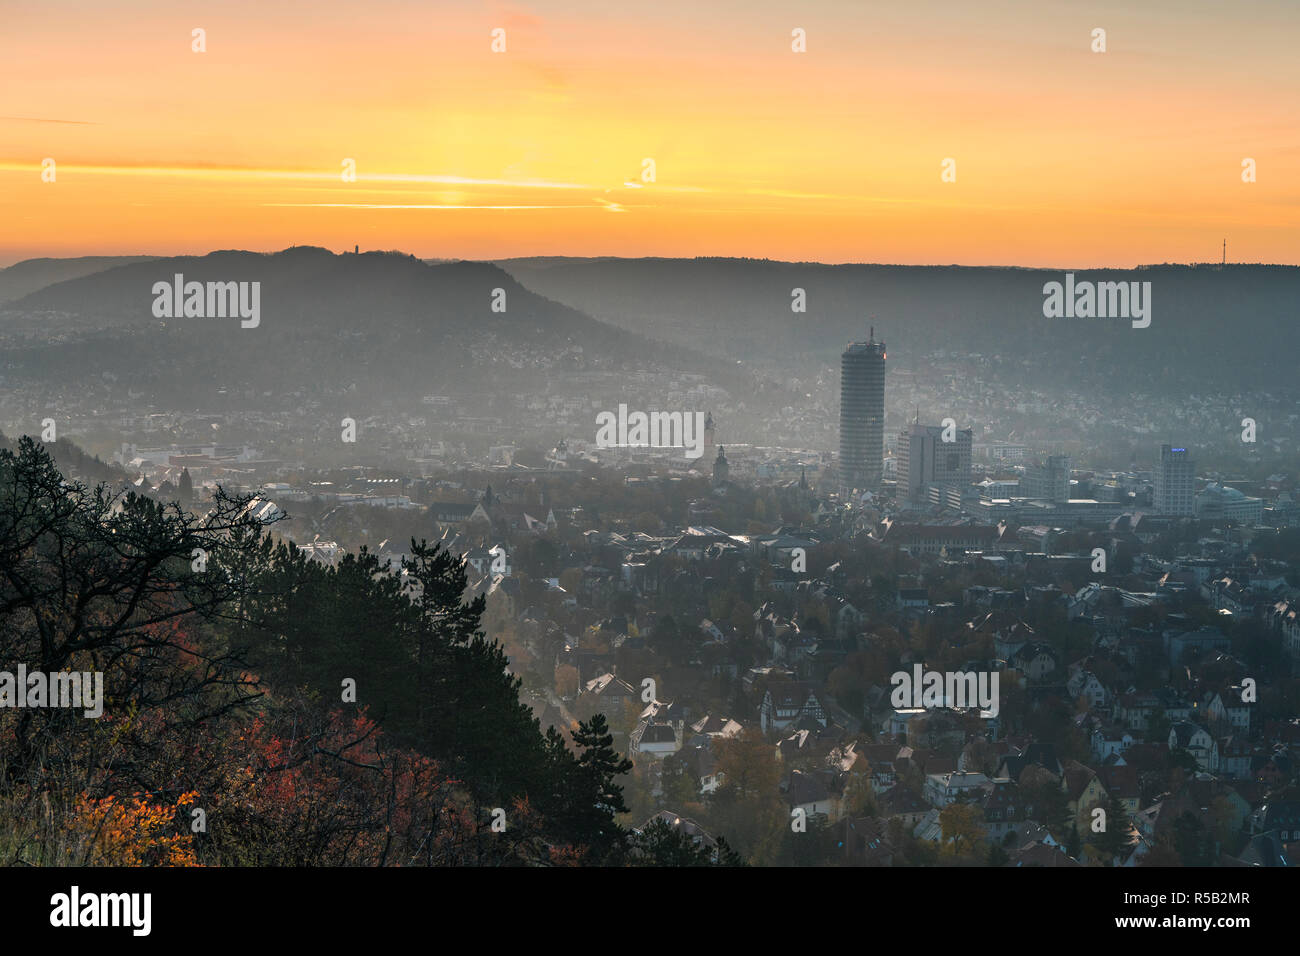 Sunrise over Jena, Nebel, Thuringia, Germany Stock Photo